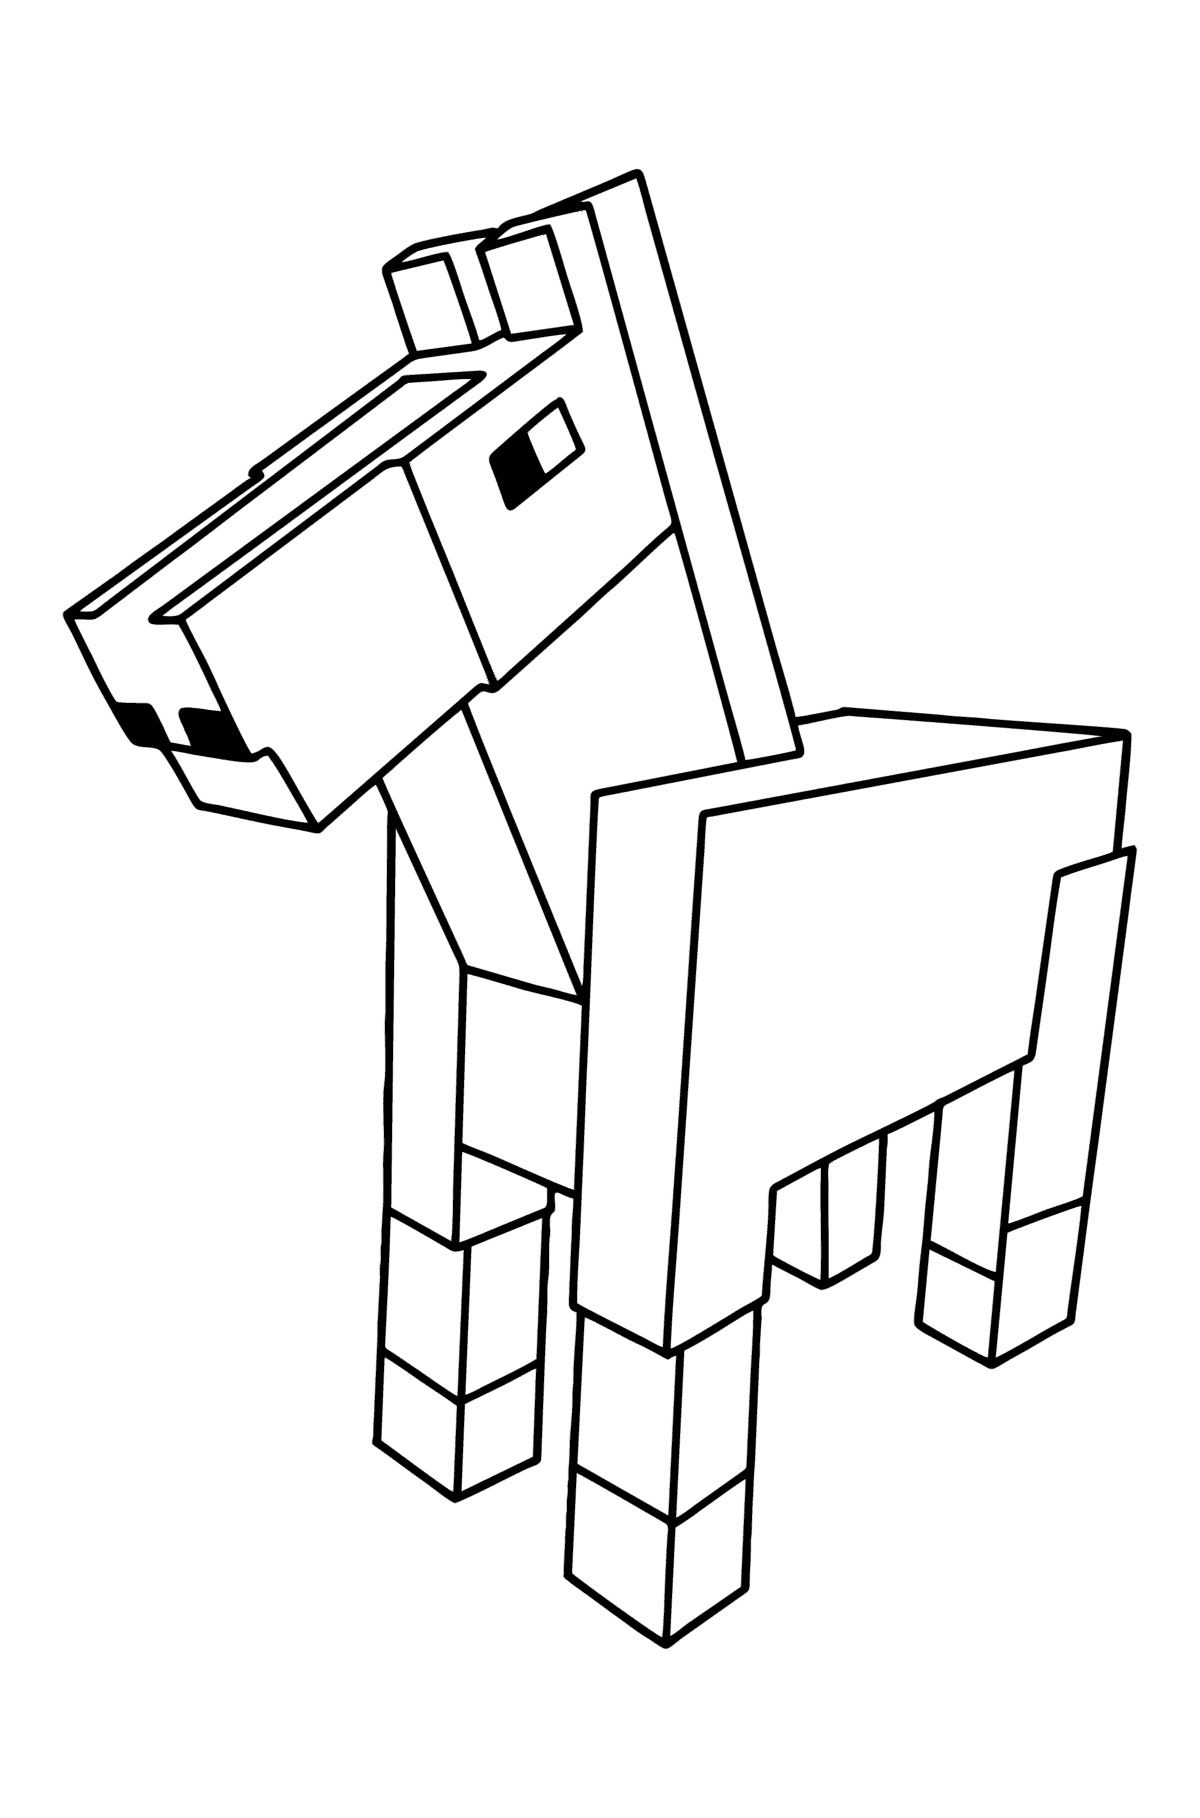 Kleurplaat Minecraft Horse - kleurplaten voor kinderen